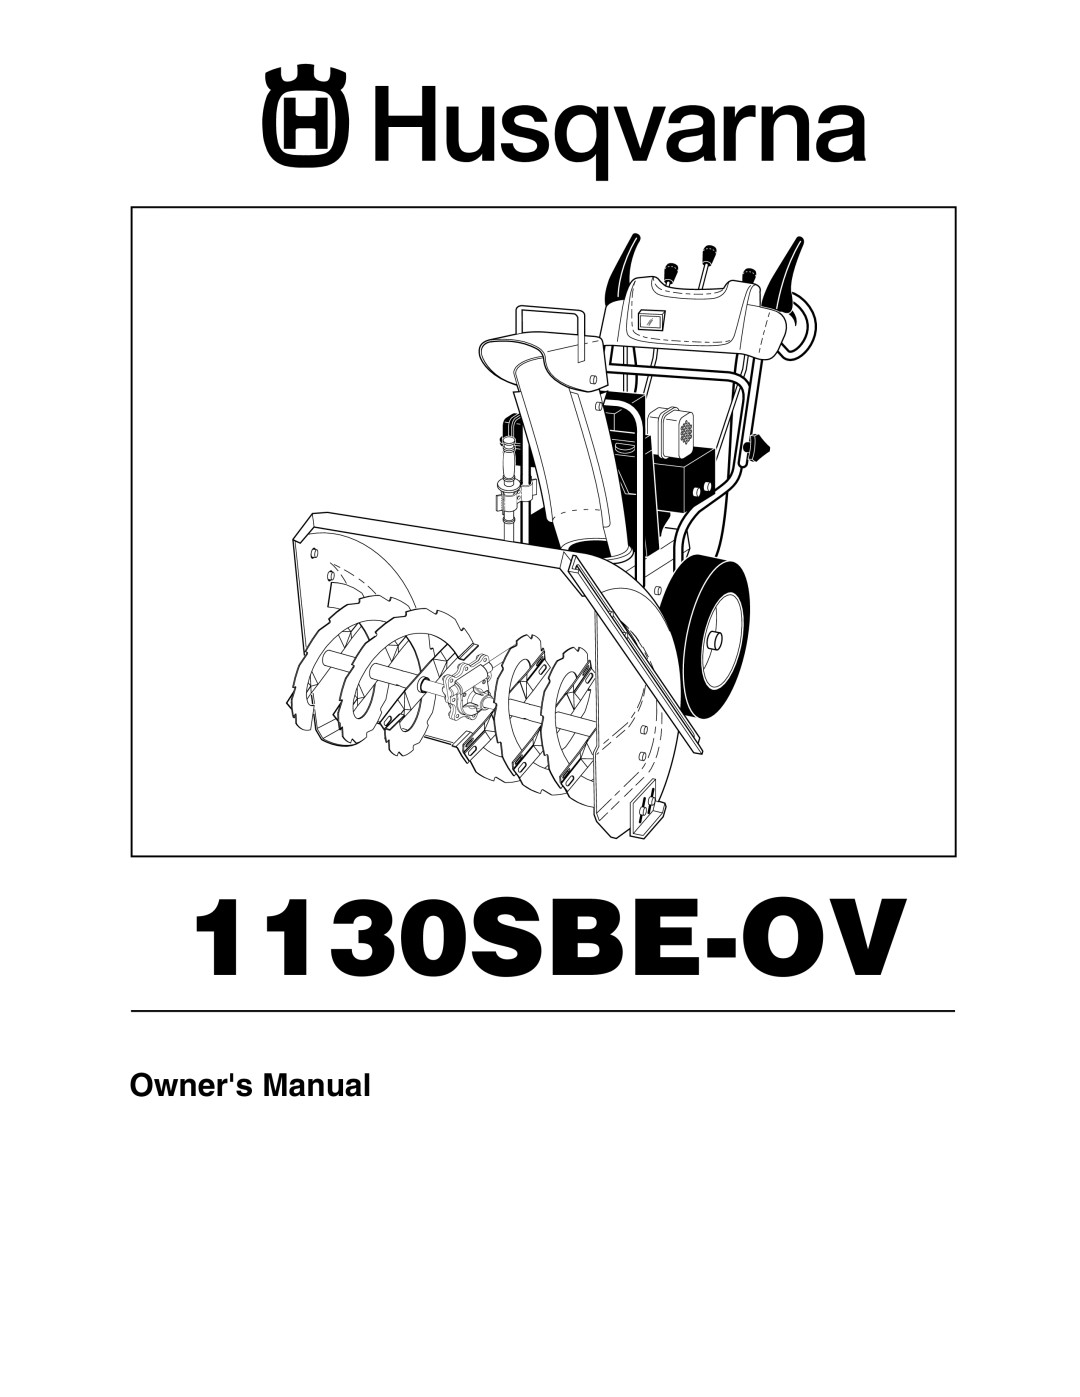 Husqvarna 1130SBE-OV owner manual 